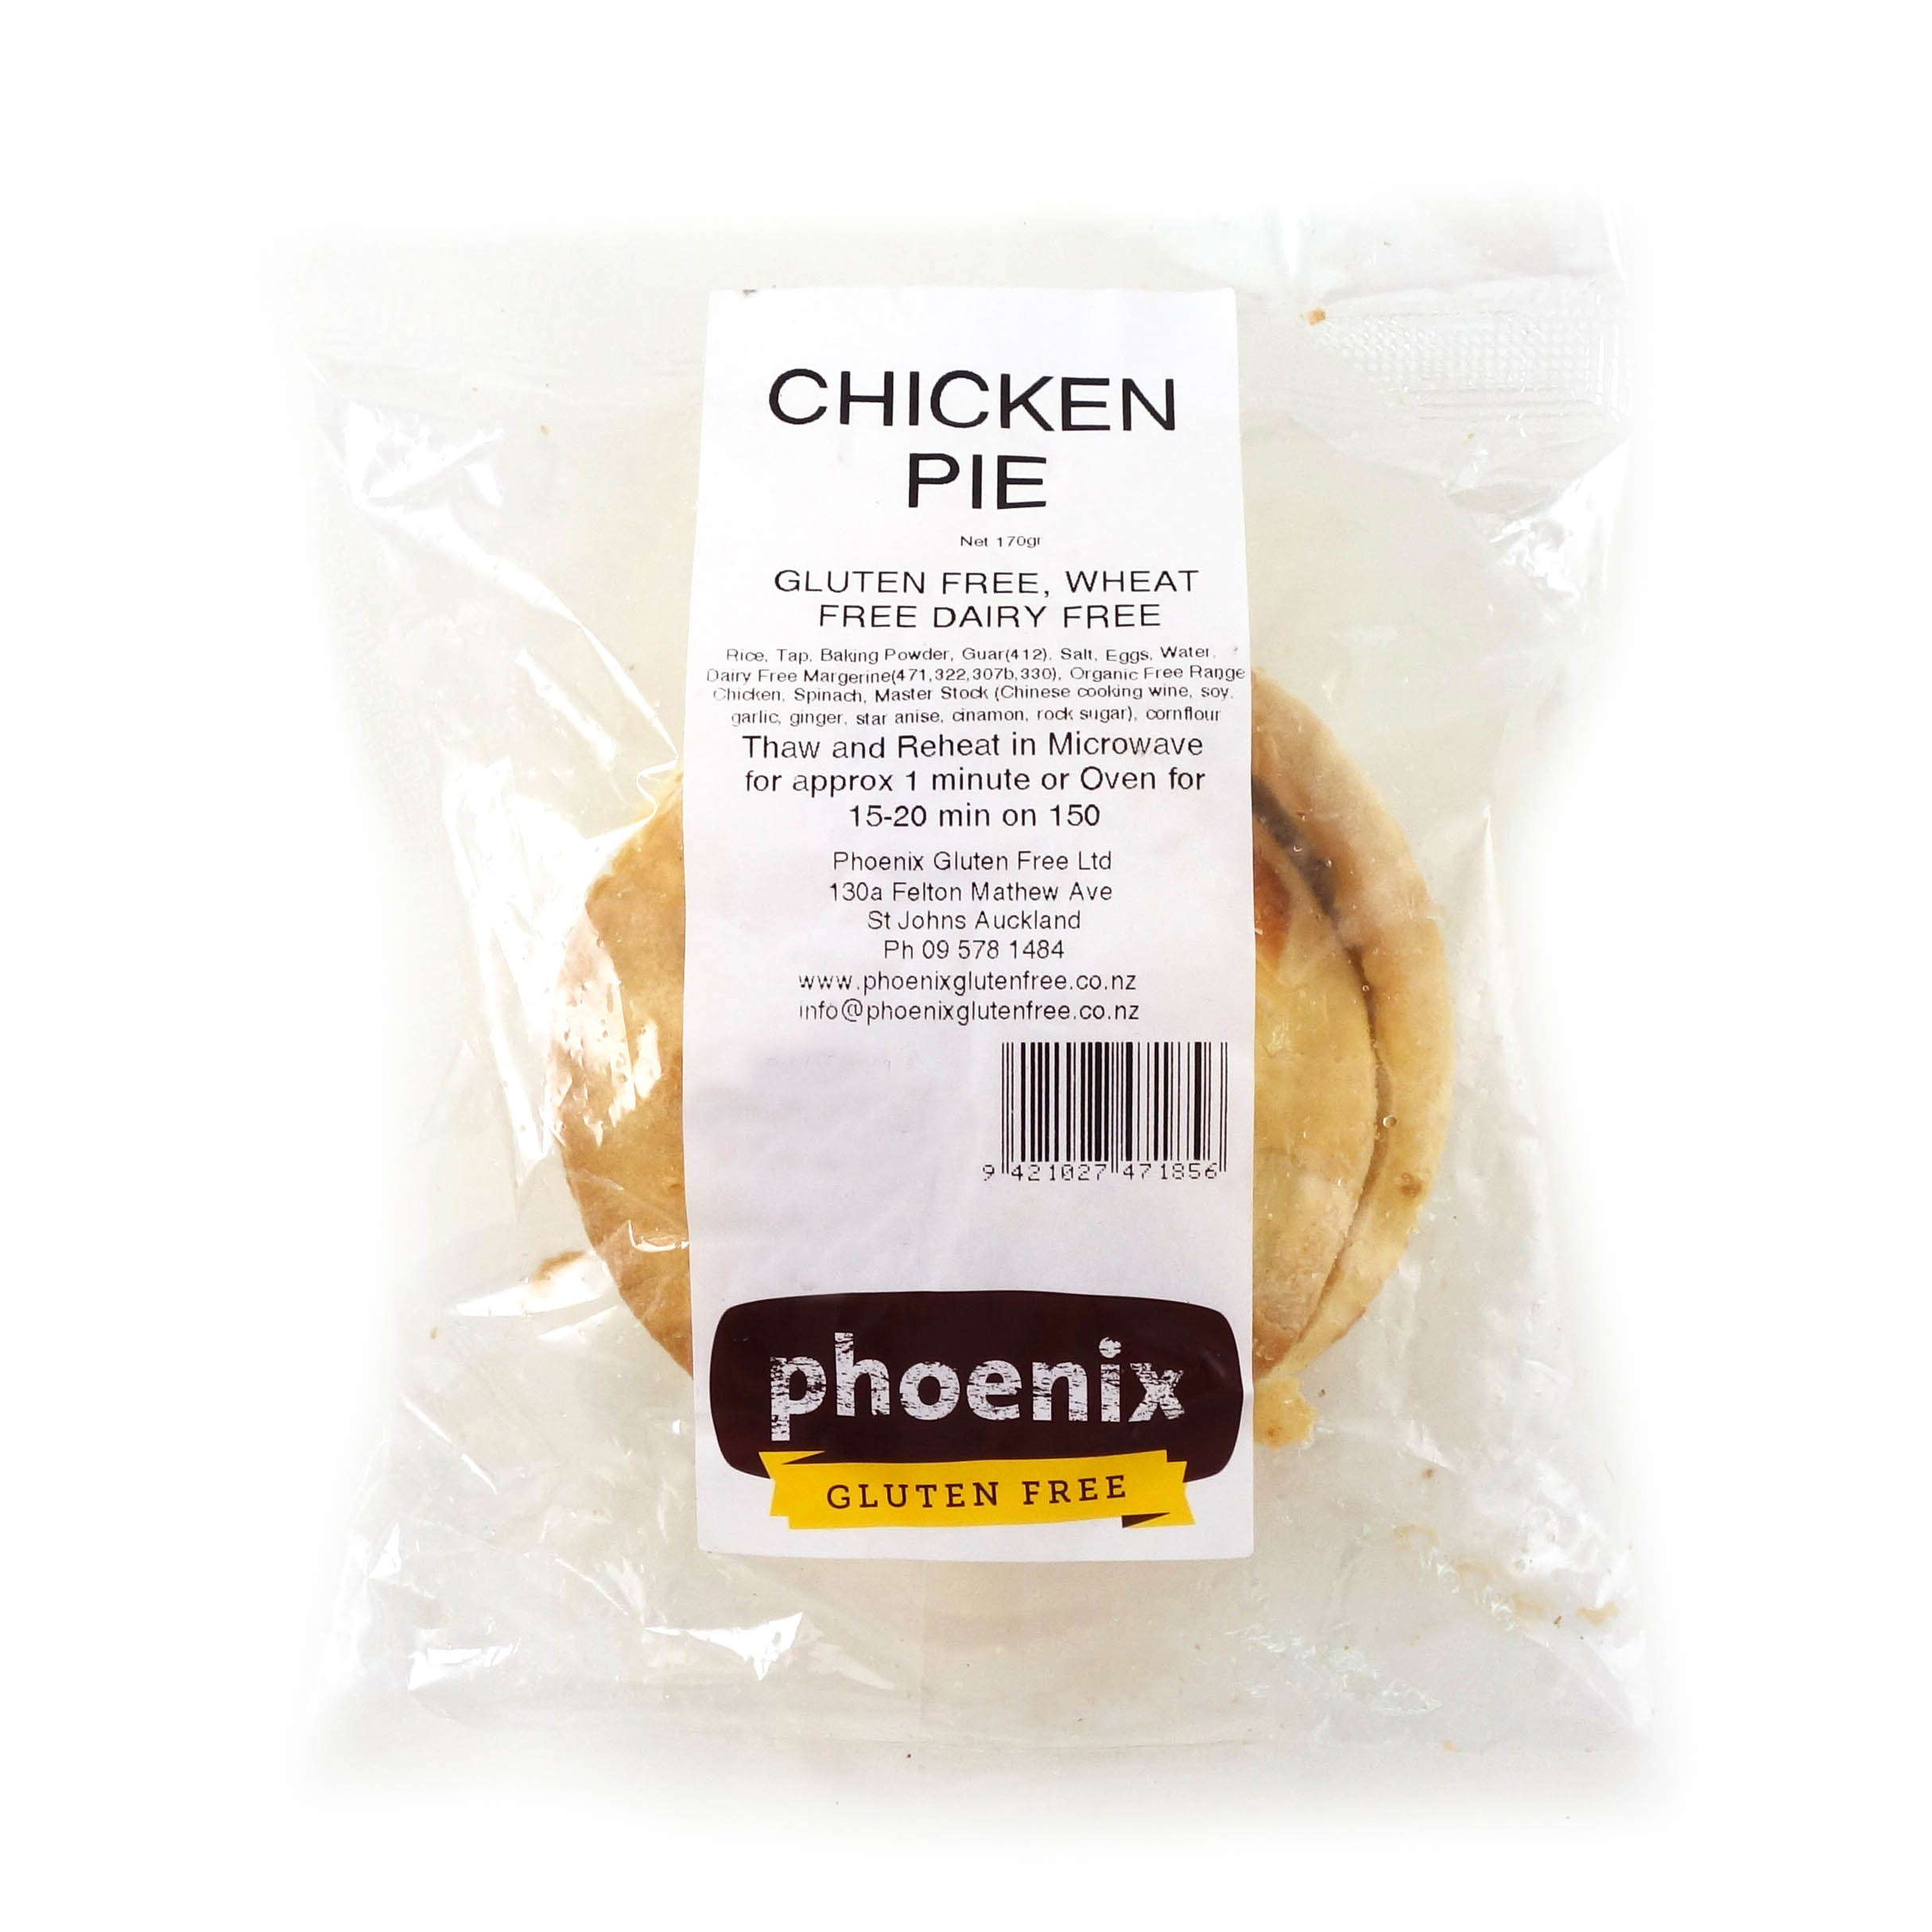 Frozen Phoenix GF Chicken Pie 170g - NZ*